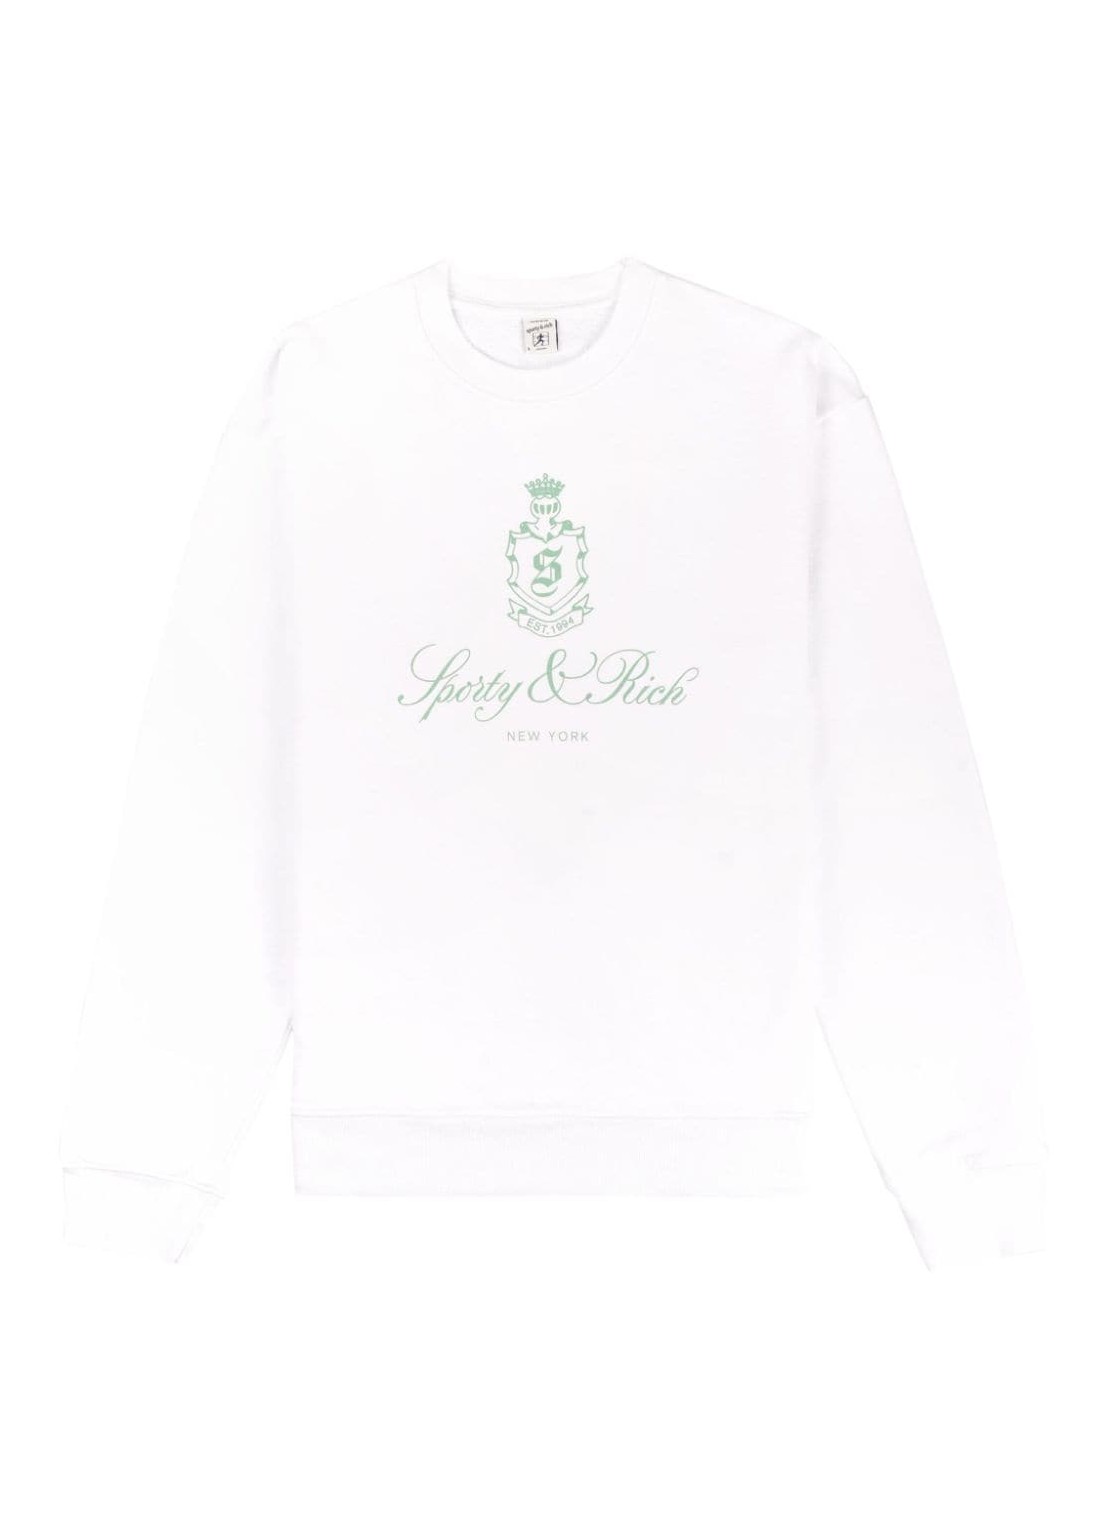 Sudadera sporty & rich sweater womanvendome crewneck white/sage - ws067s412vw white talla L
 